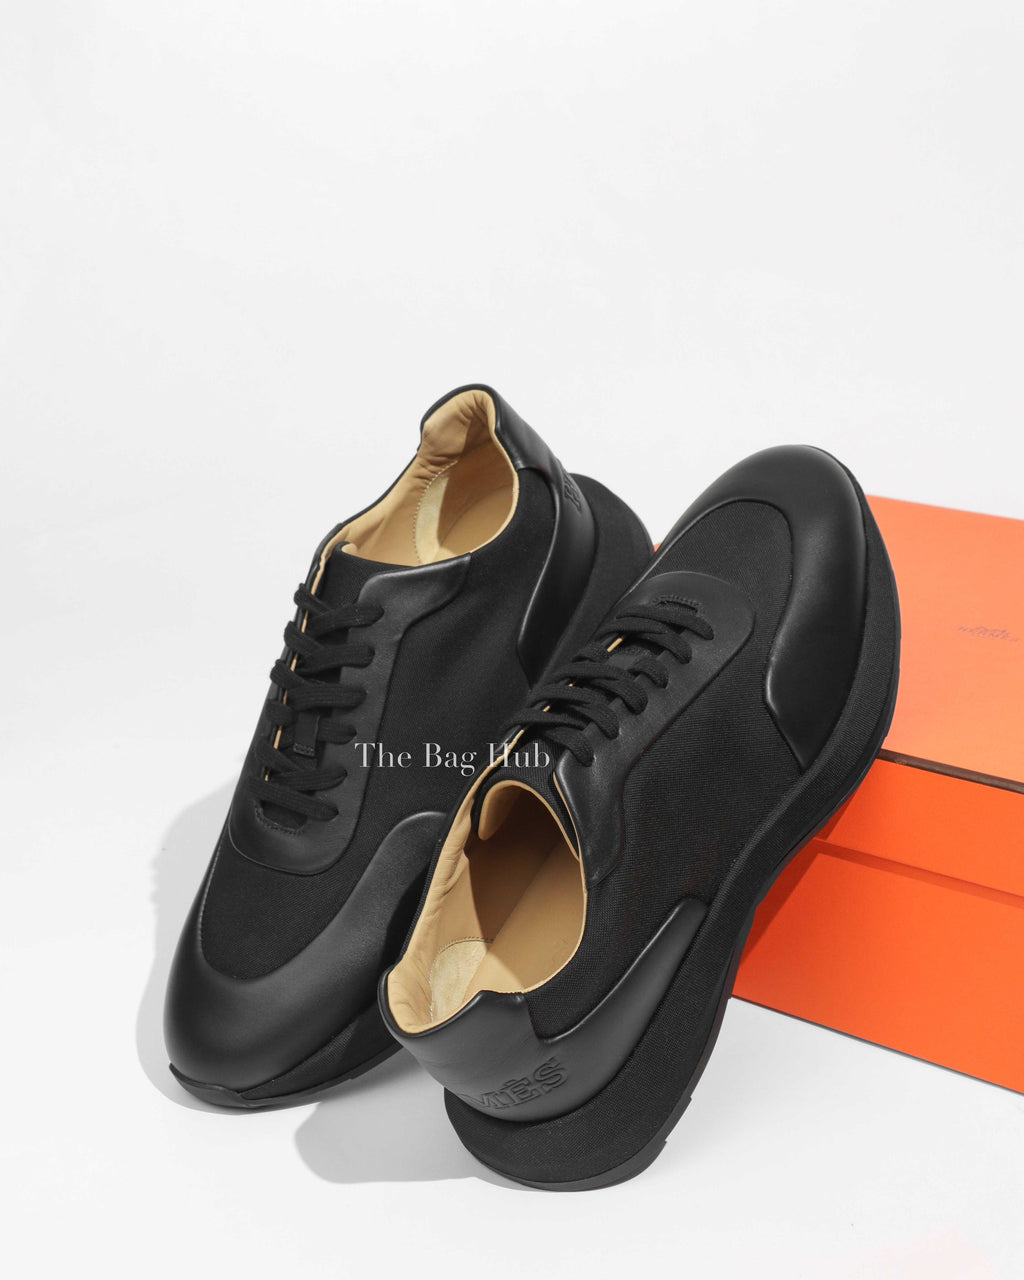 Hermes Black Fairplay Men's Sneakers Size 44-1